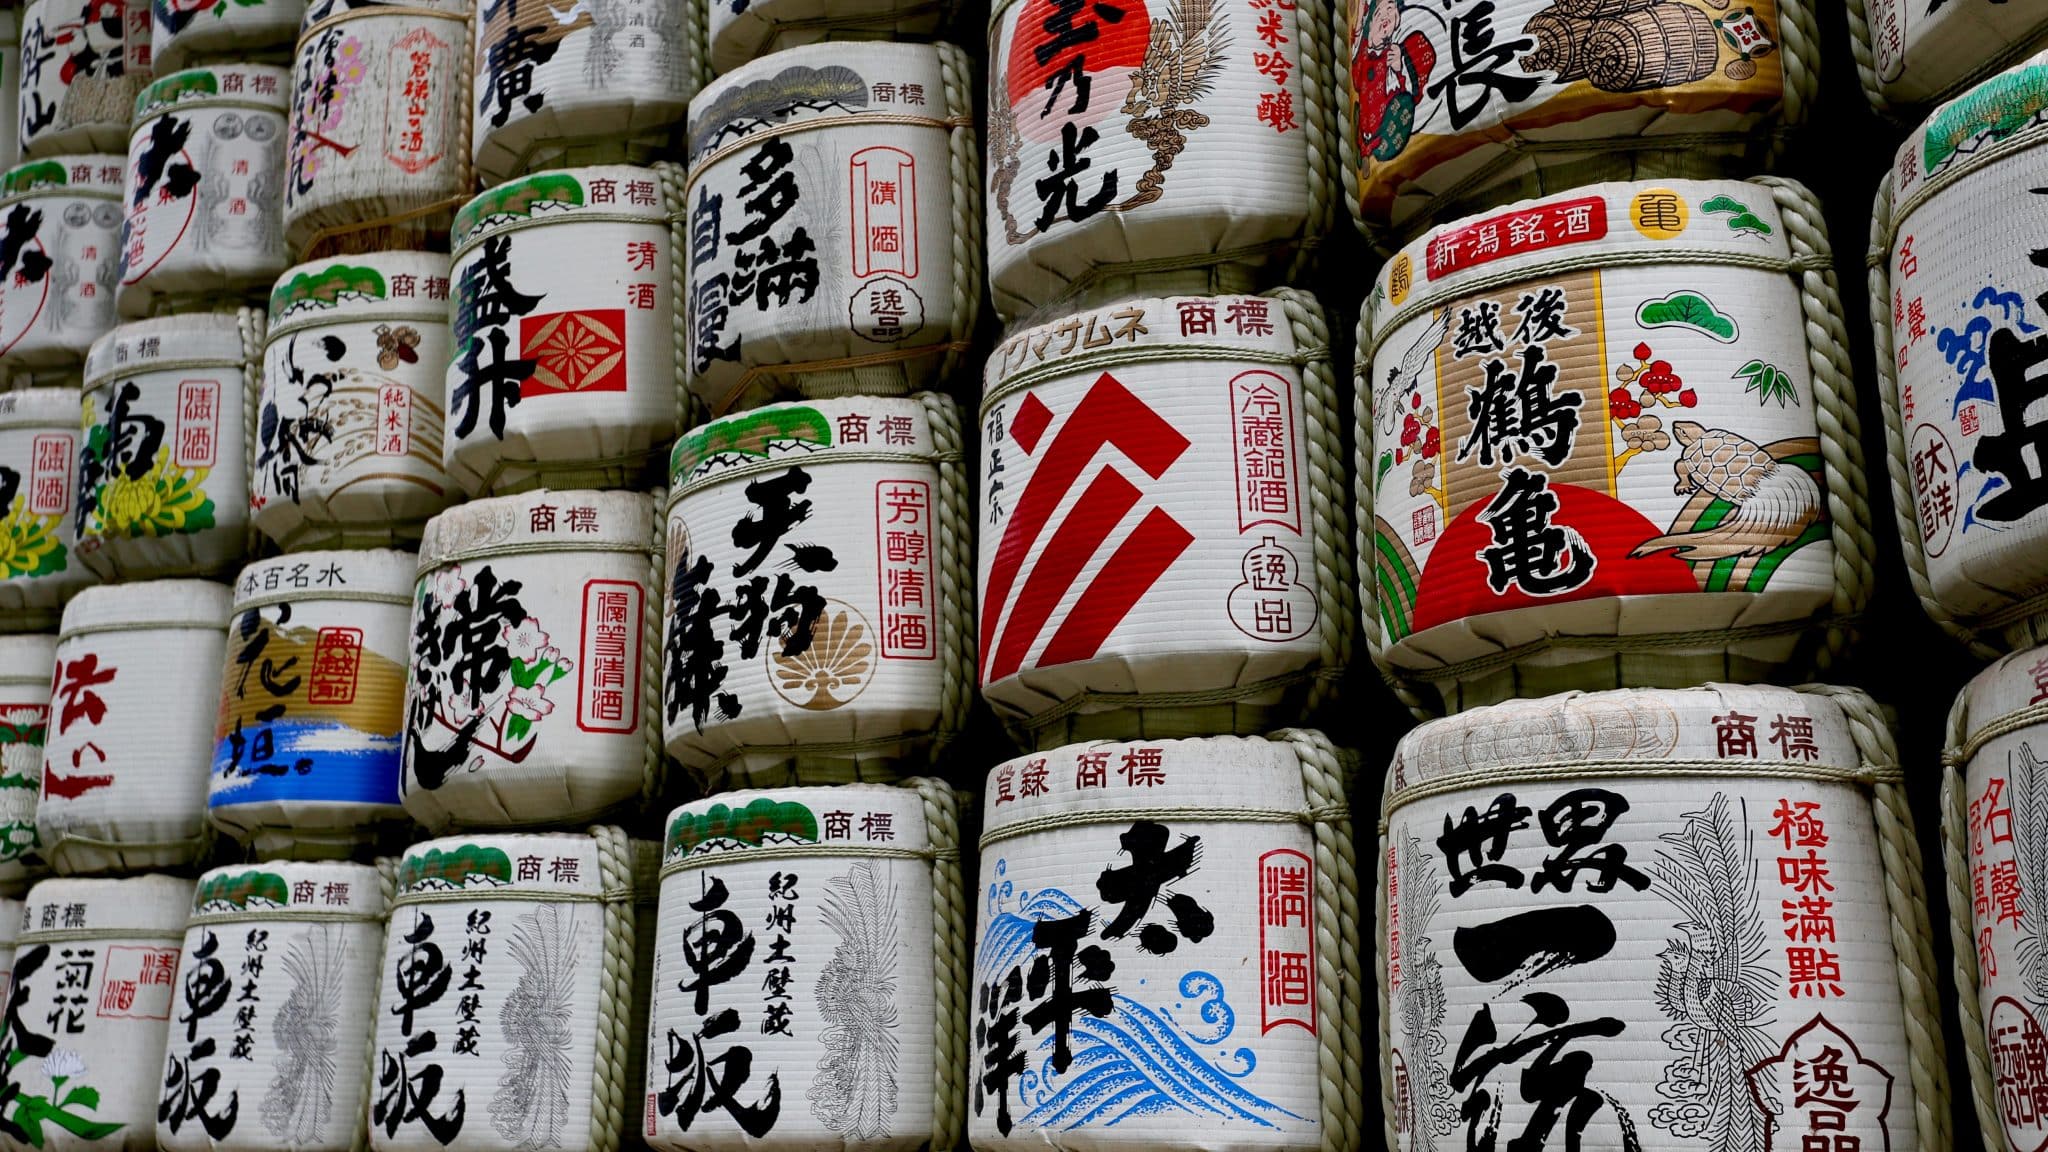 Đến Nhật Bản, phải thử bằng được 7 thức uống đặc trưng của xứ sở này - 4